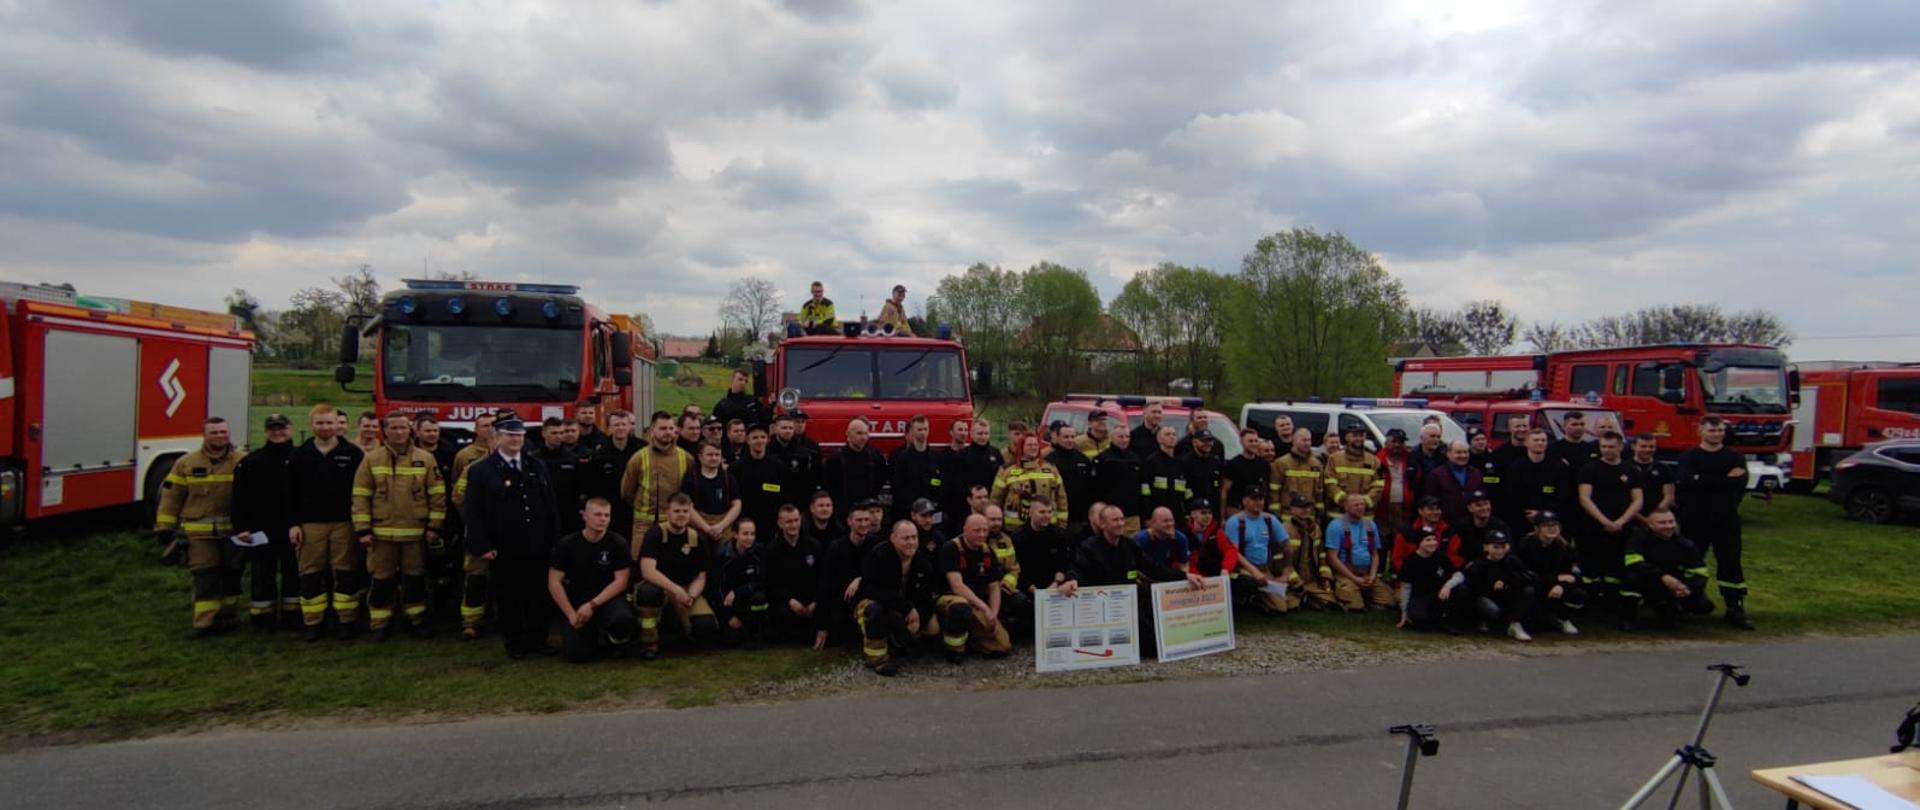 Zdjęcie zbiorowe wszystkich uczestników warsztatów szkoleniowych. W tle za strażakami widać samochody pożarnicze